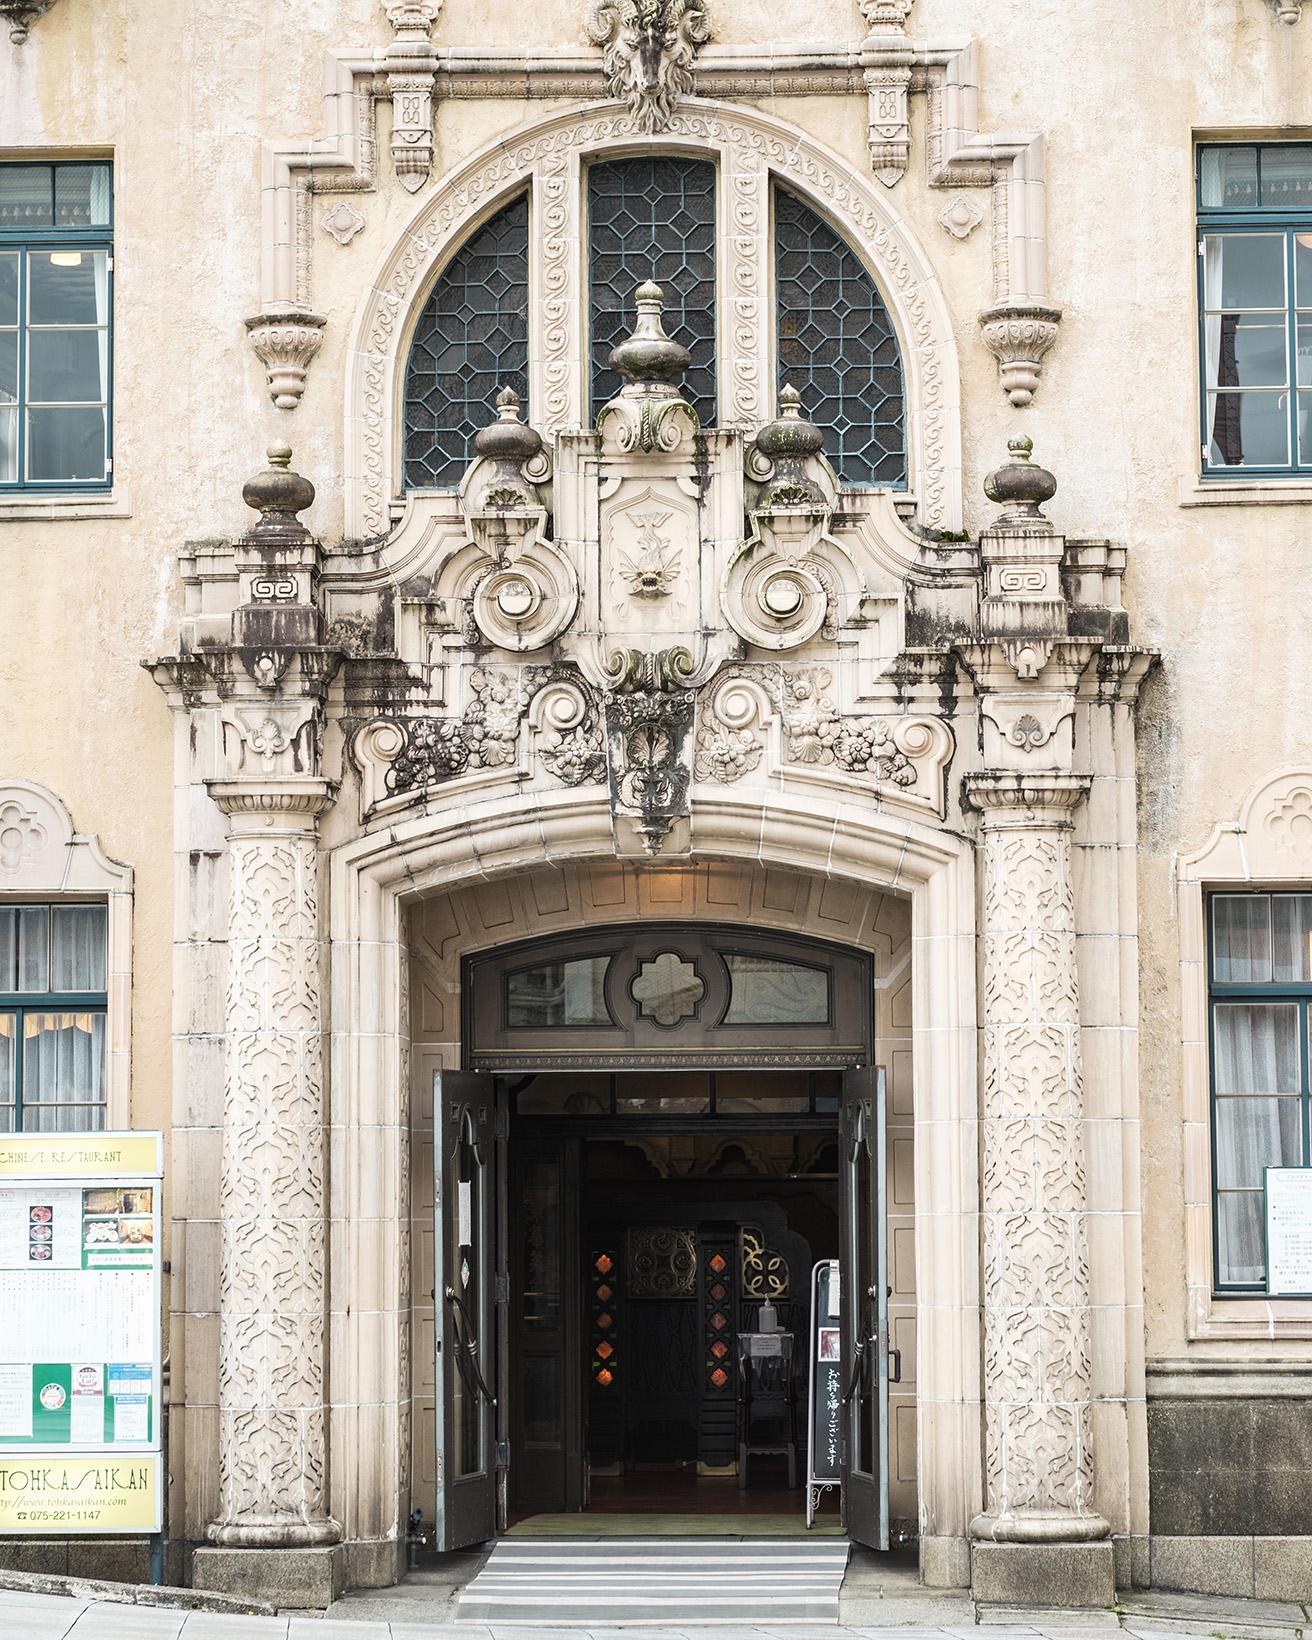 玄関のバロック風のテラコッタ装飾が見どころの一つ。